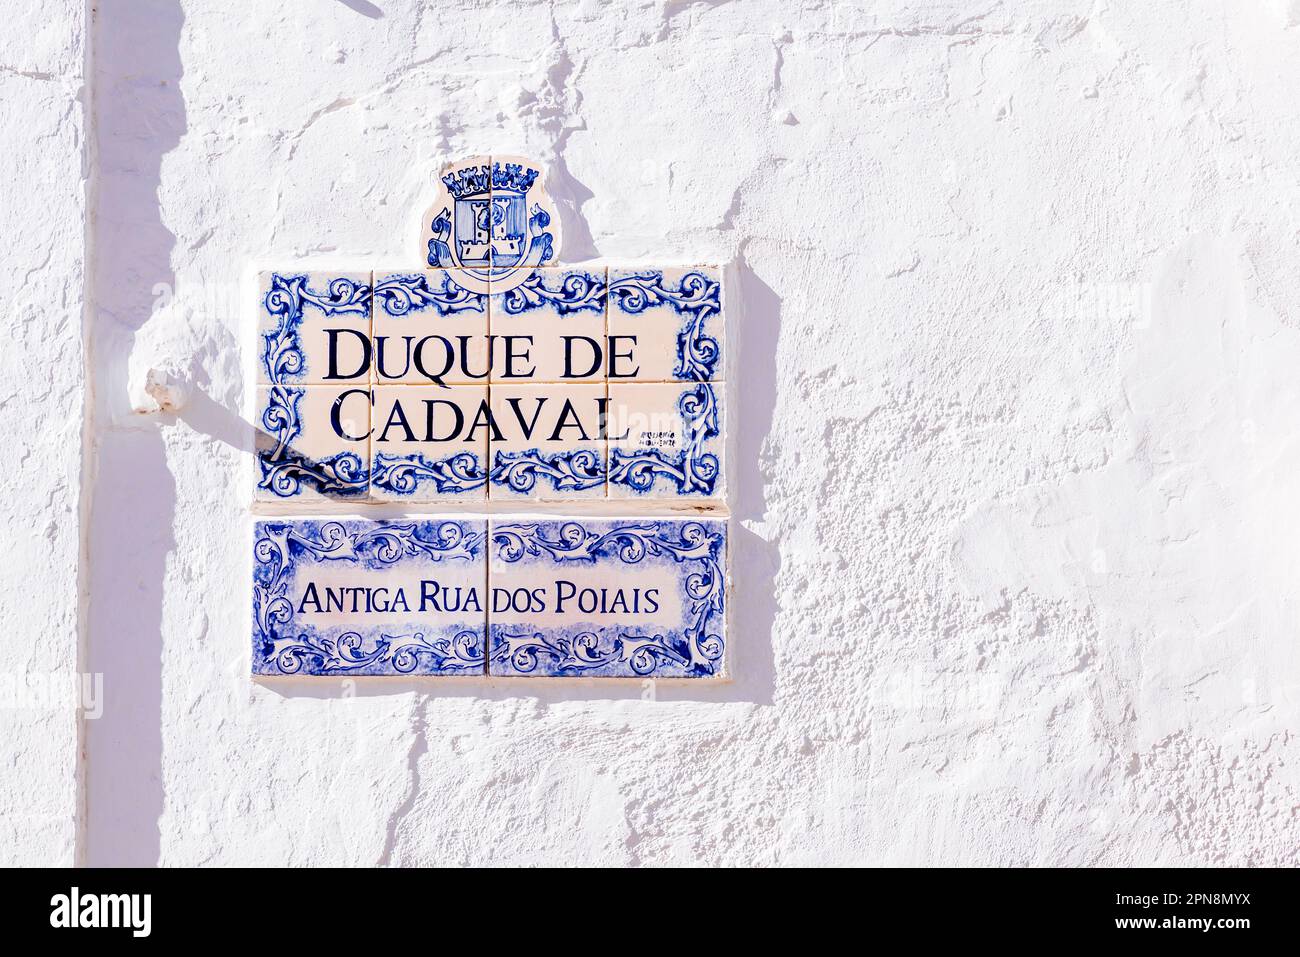 Mosaico de azulejos con los nombres de las calles. La doble nacionalidad cultural y el bilingüismo, debido a su pasado portugués, etiquetan los nombres de la calle Foto de stock